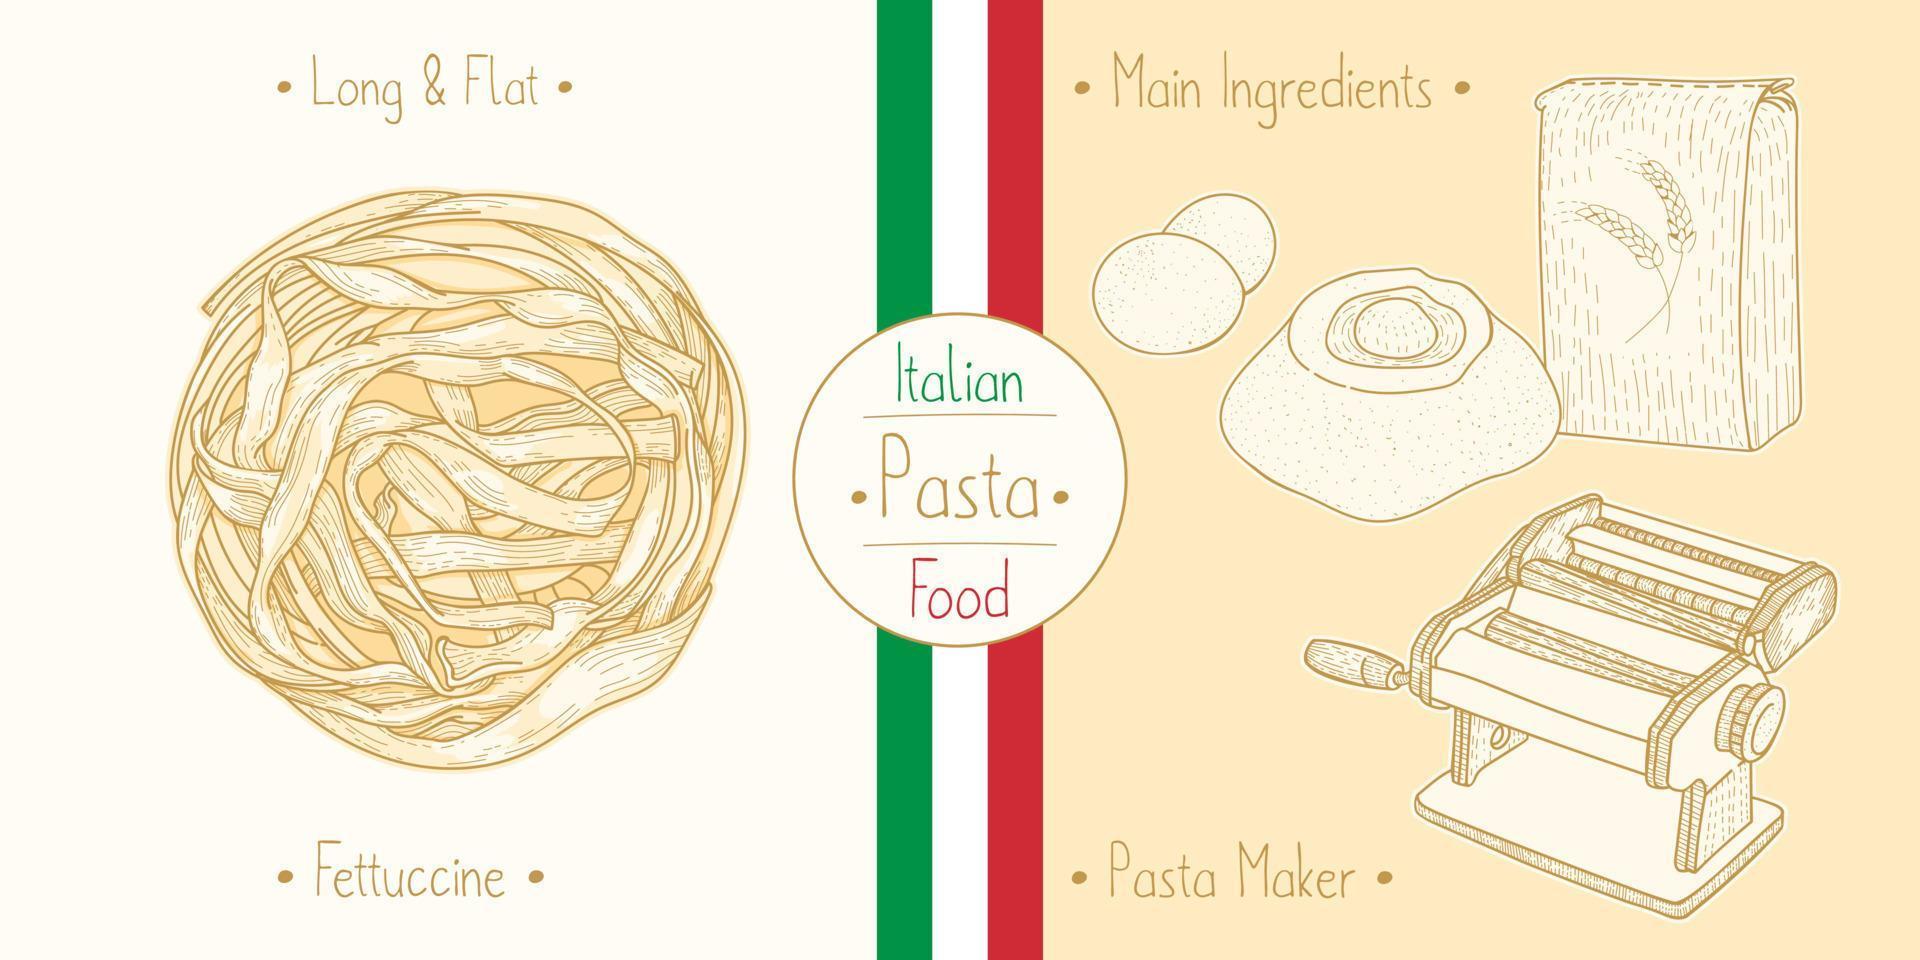 cocinar pasta fettuccine de comida italiana e ingredientes principales y equipos para hacer pasta, dibujar ilustraciones en estilo vintage vector